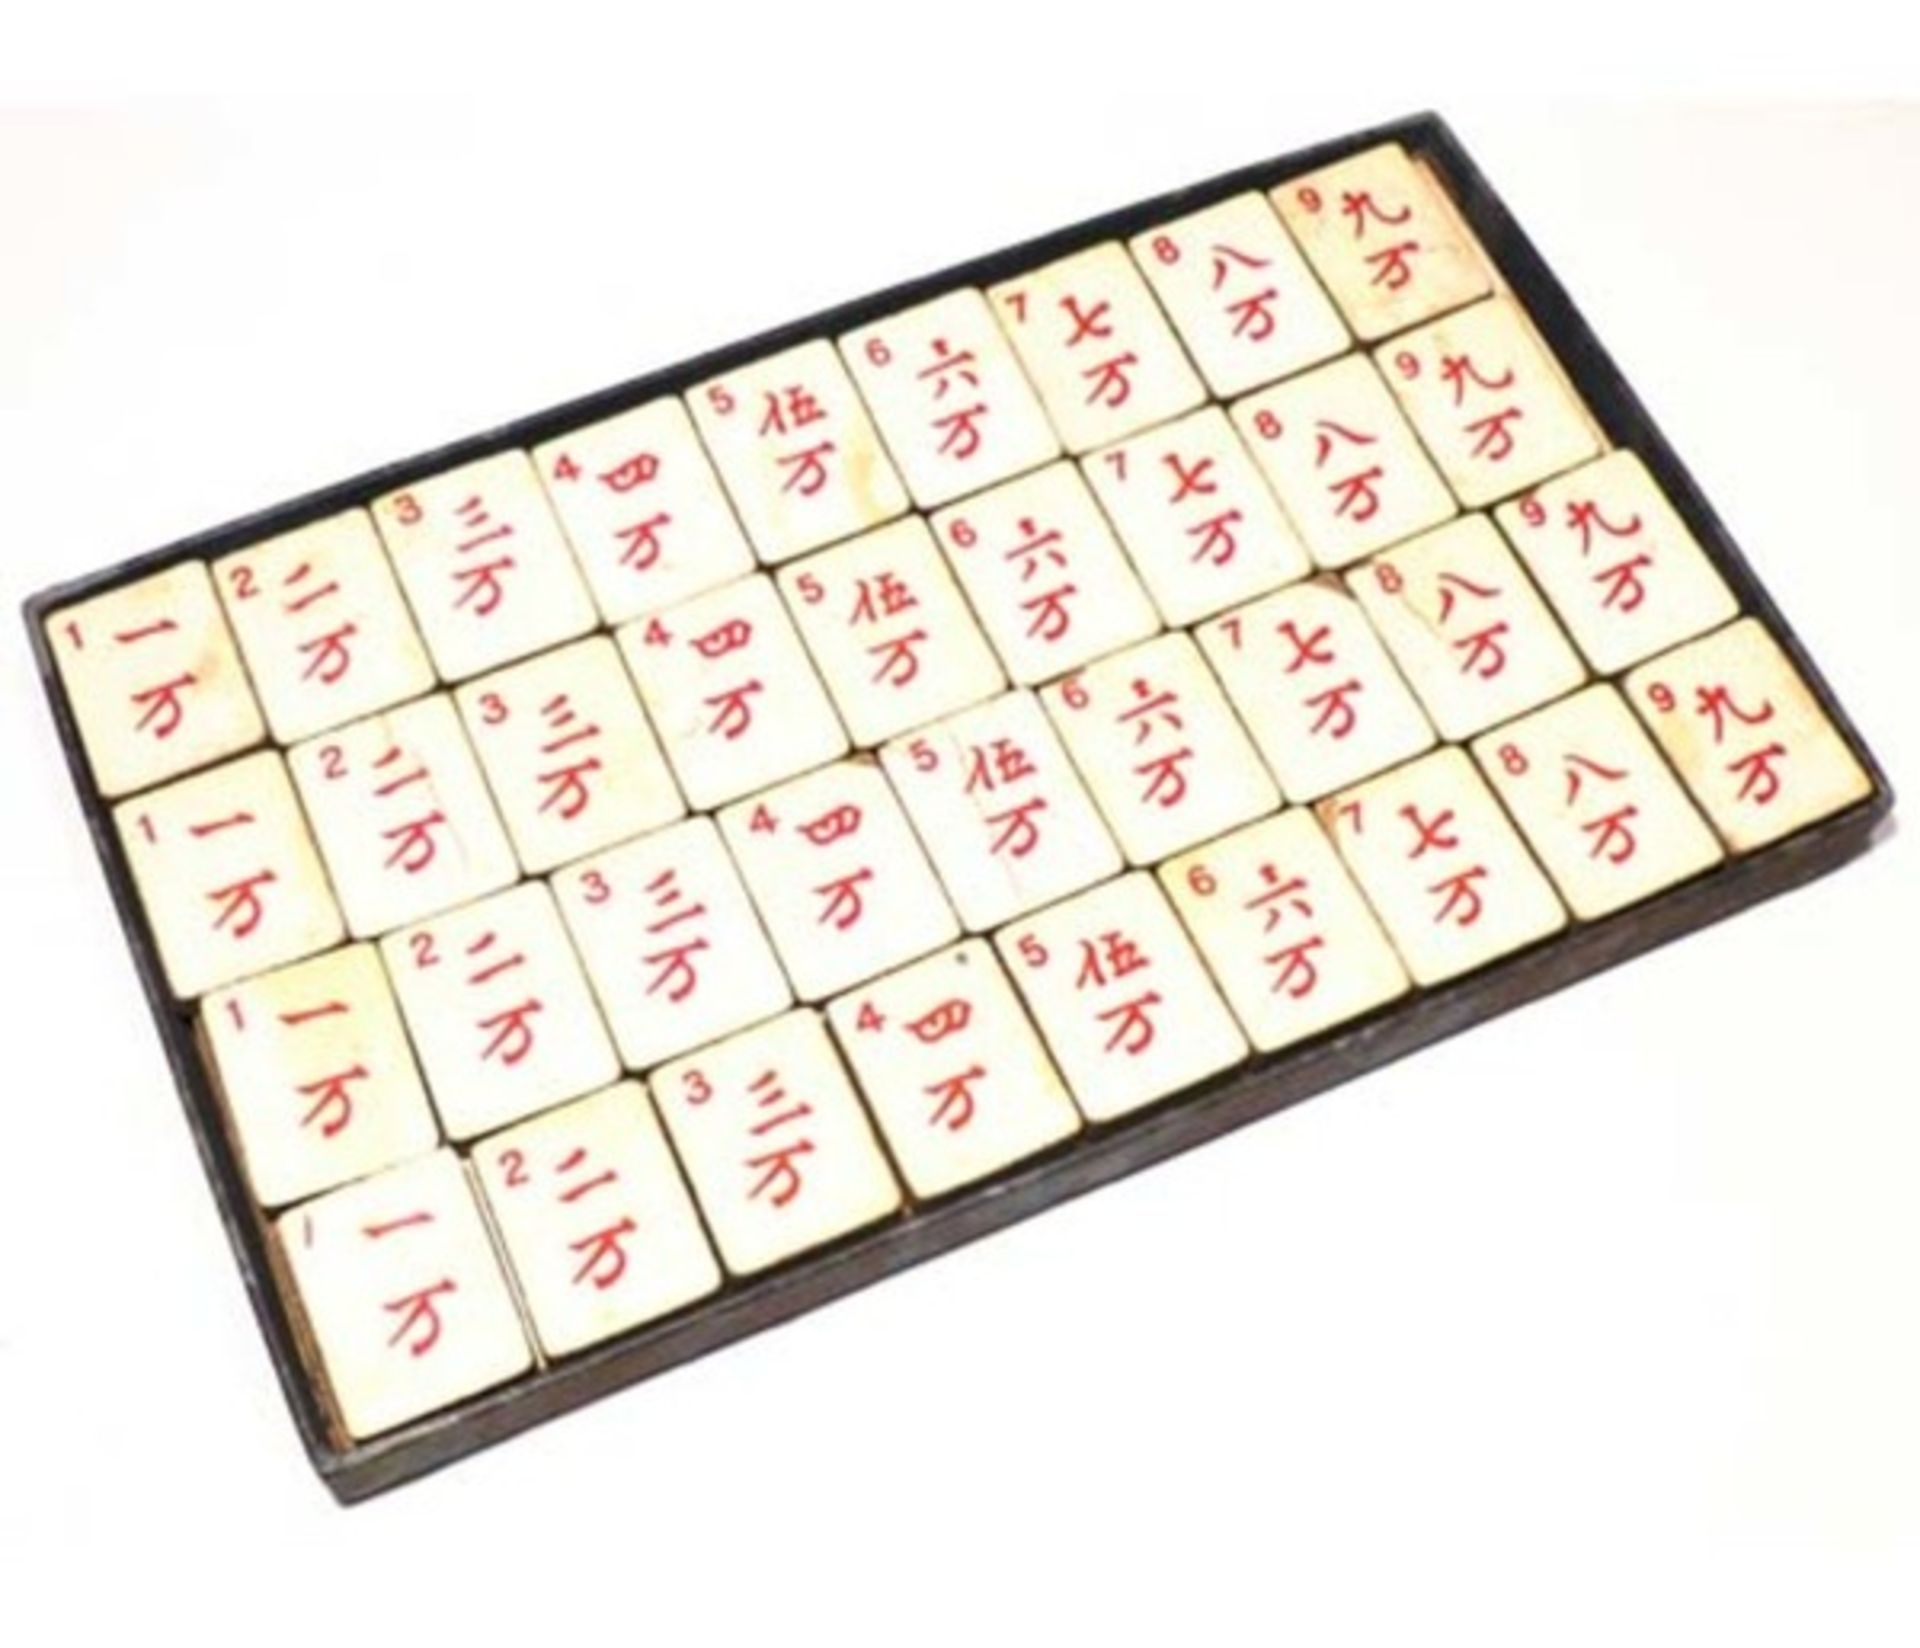 (Mahjong) Mahjong Europees, De Sala Spelen met het Rode zegel, ca. 1930 - Bild 14 aus 16